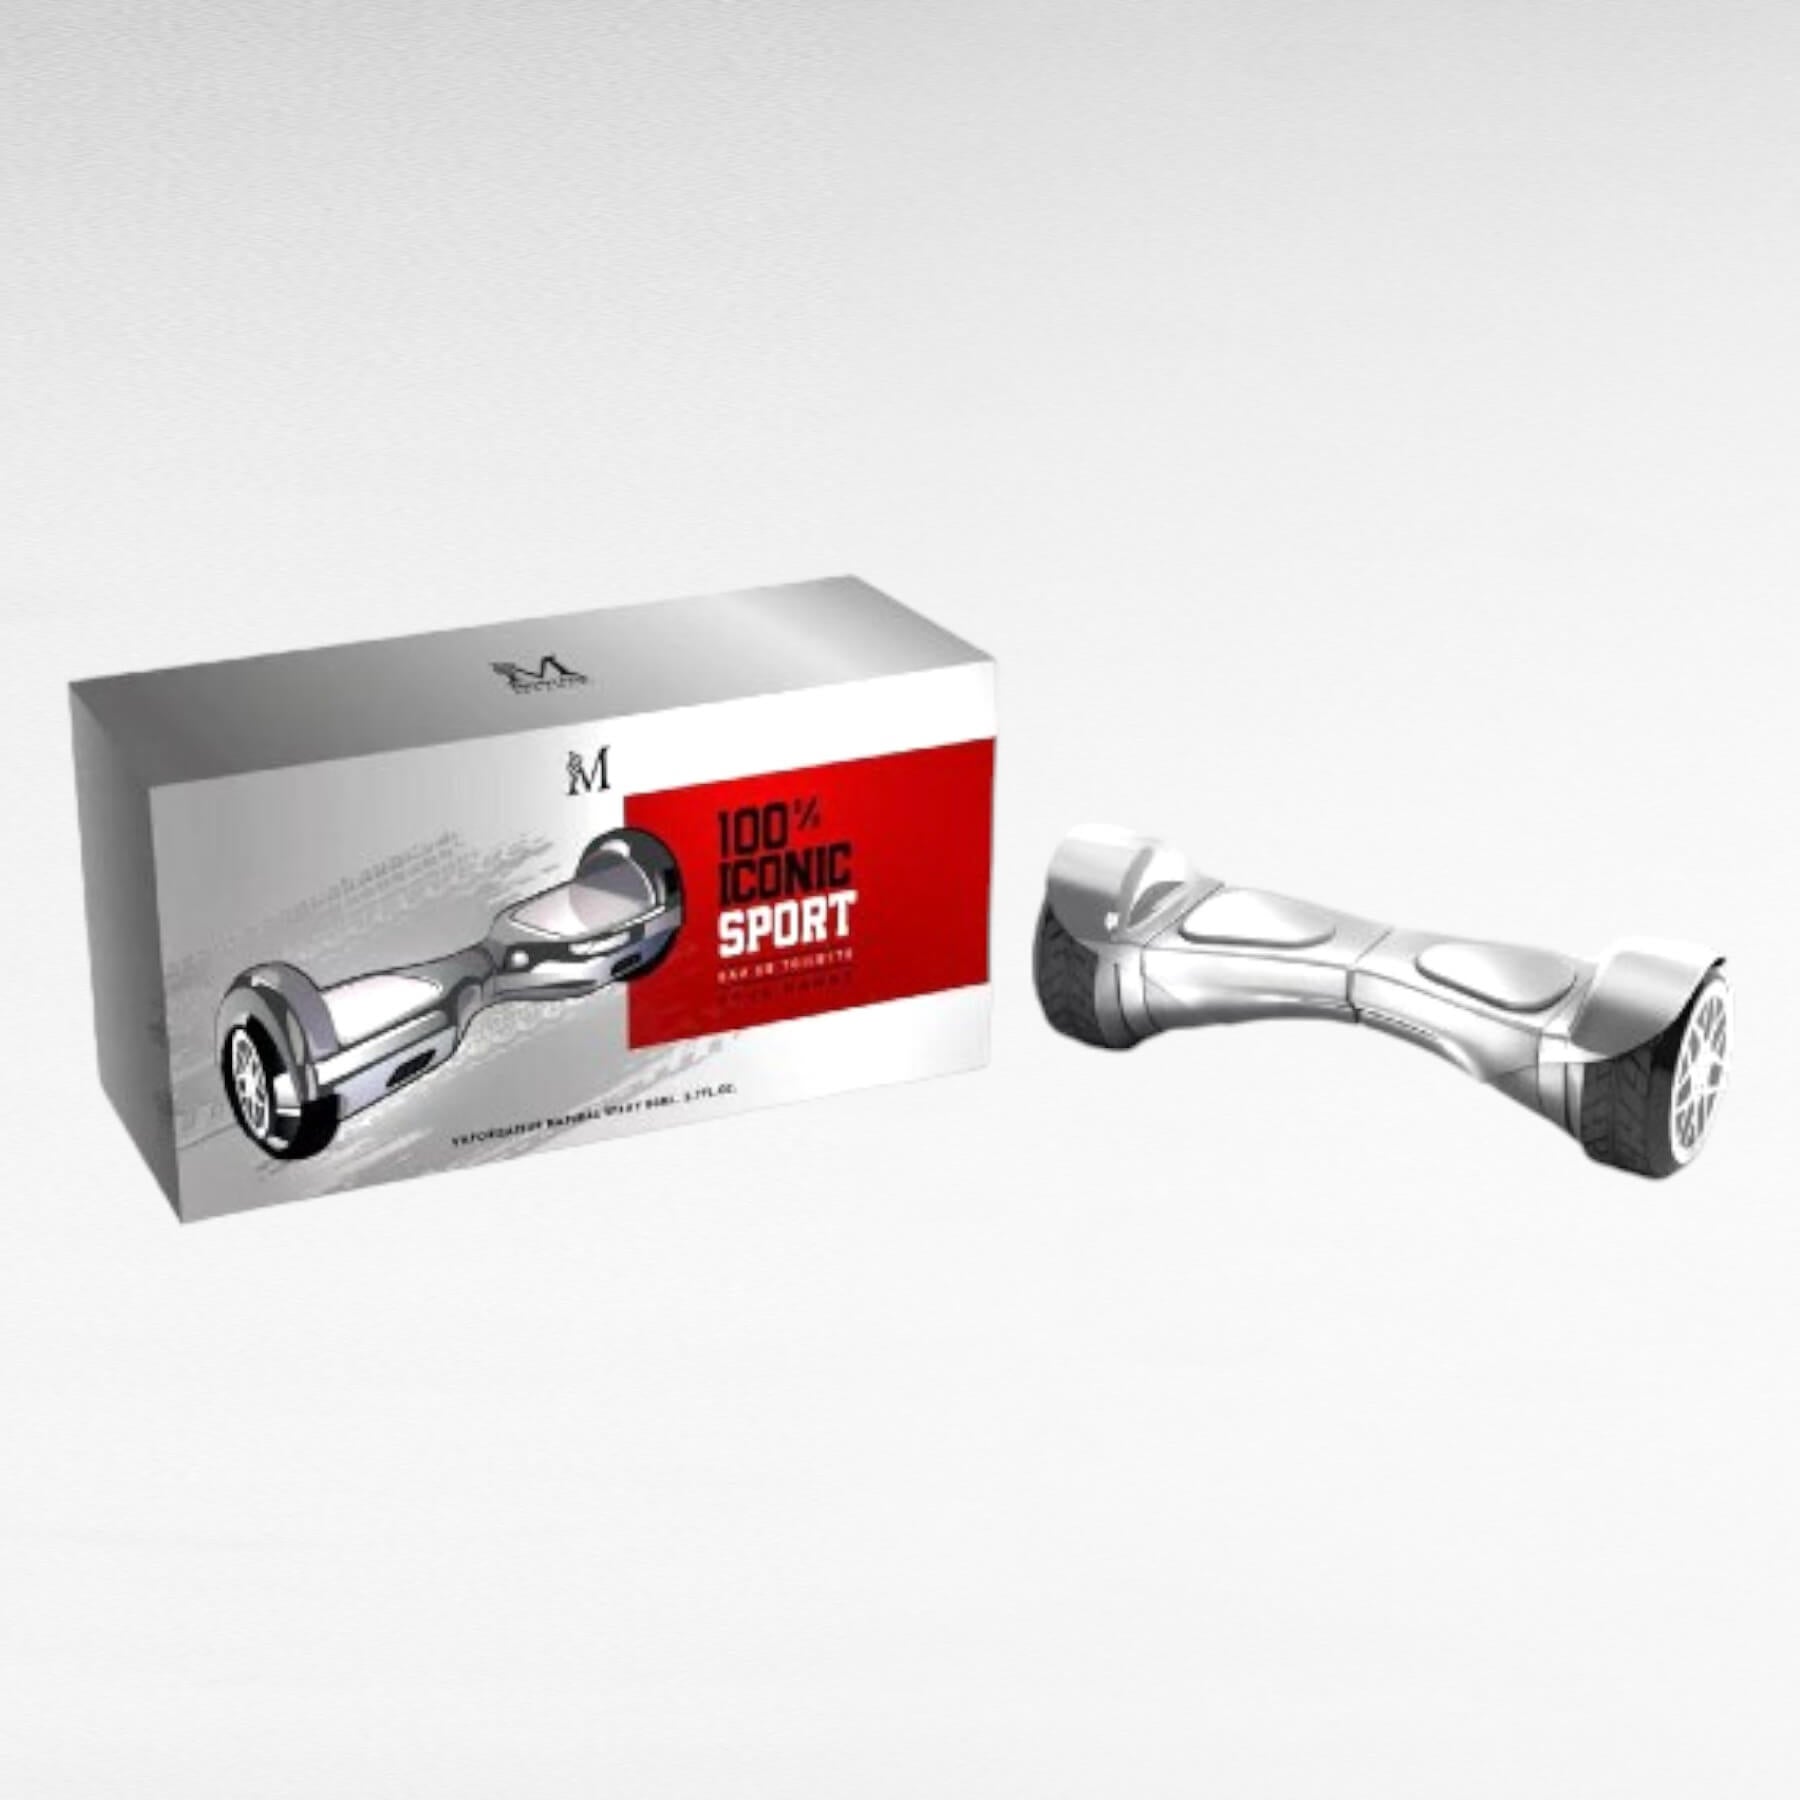 alt="100% Iconic Sport Mirage Masculino - Frasco do perfume em vidro com design desportivo e embalagem branca"